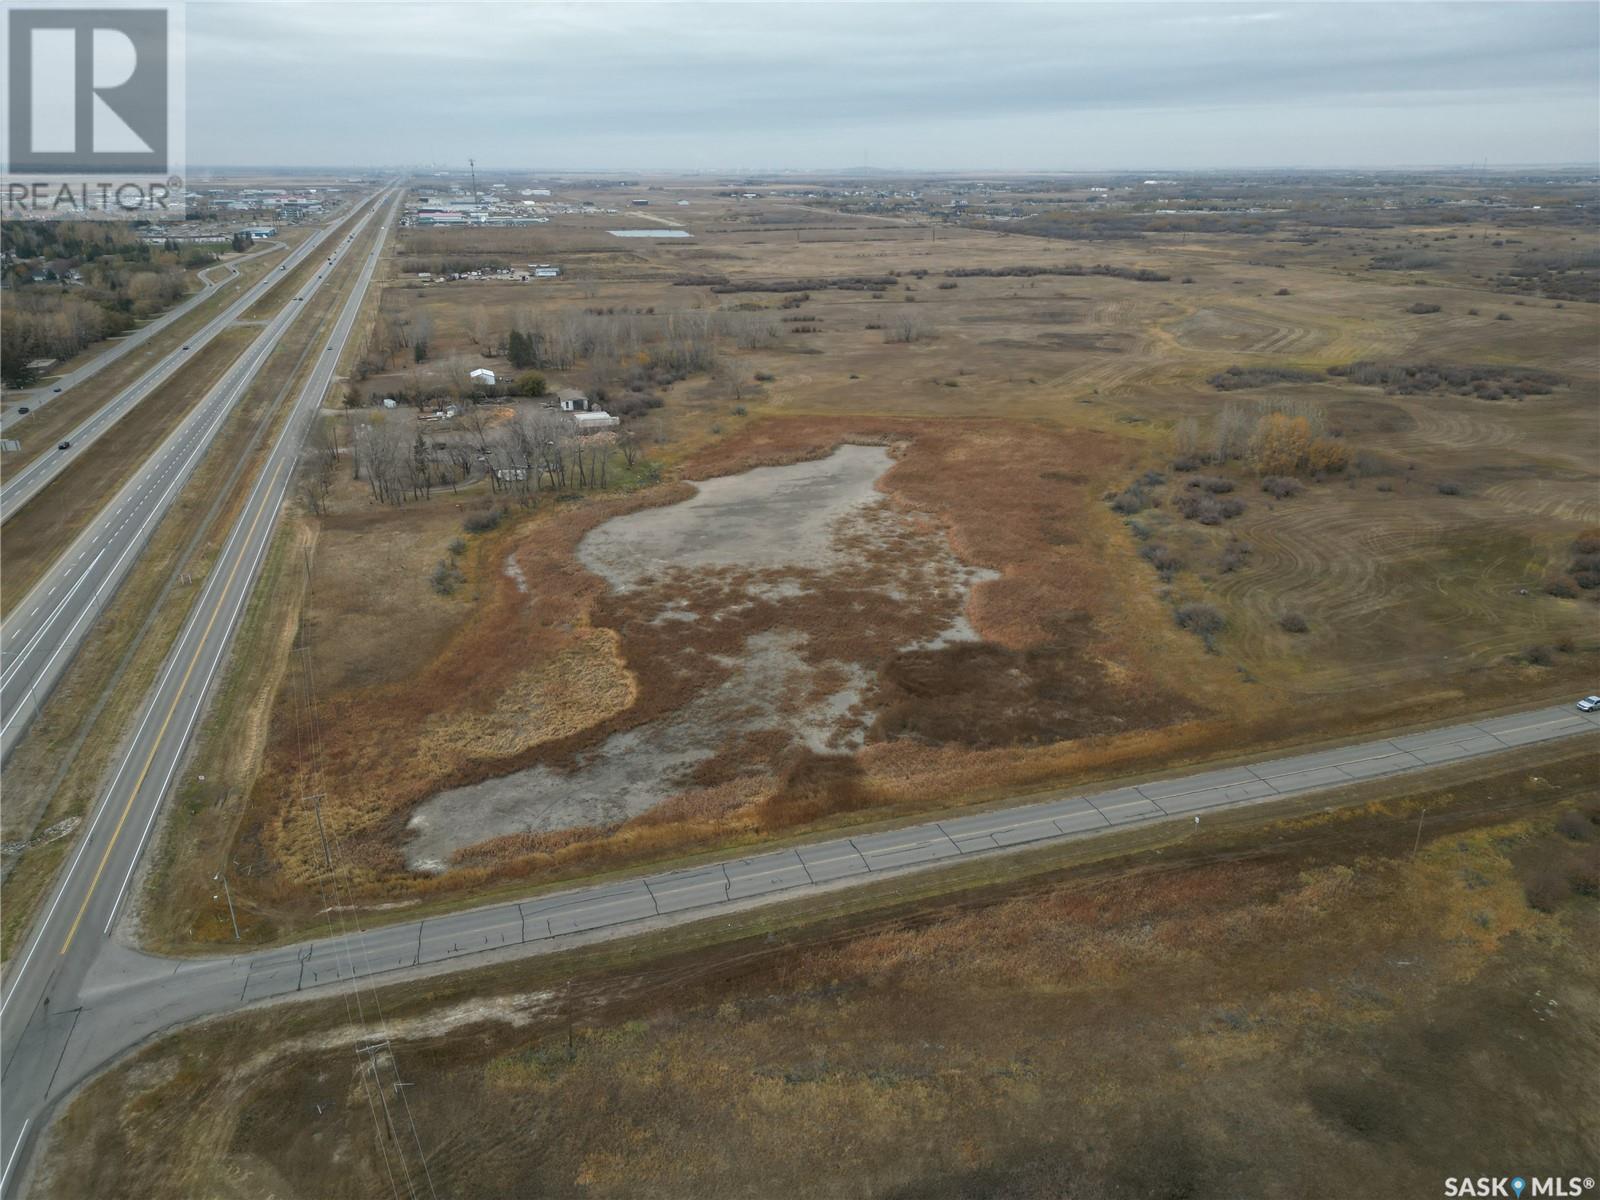 138 Acres Development Land, edenwold rm no. 158, Saskatchewan